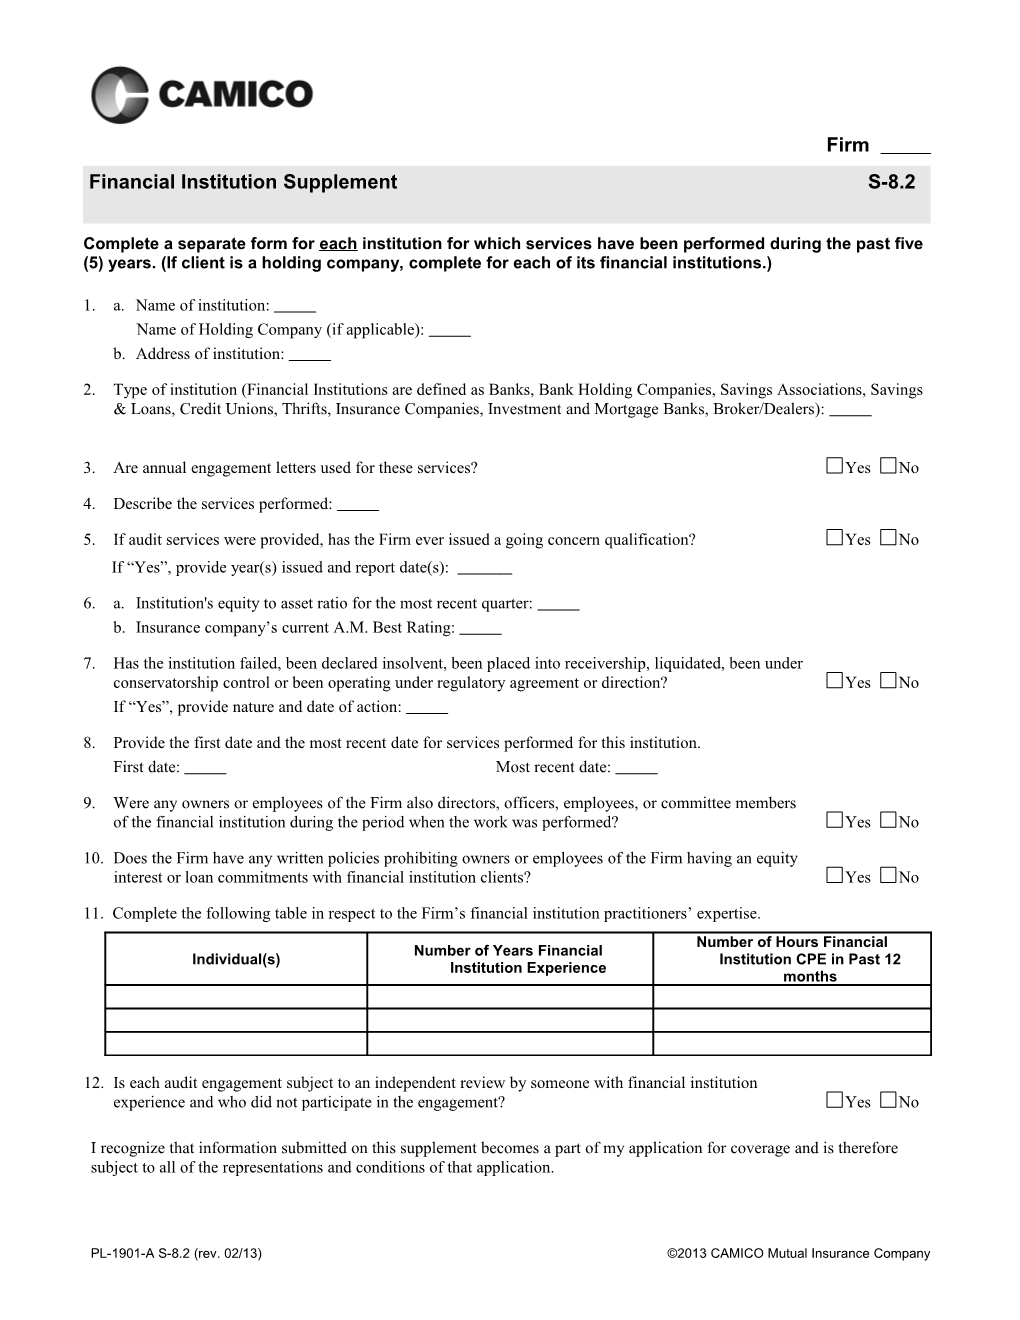 Supplemental Application Checklist